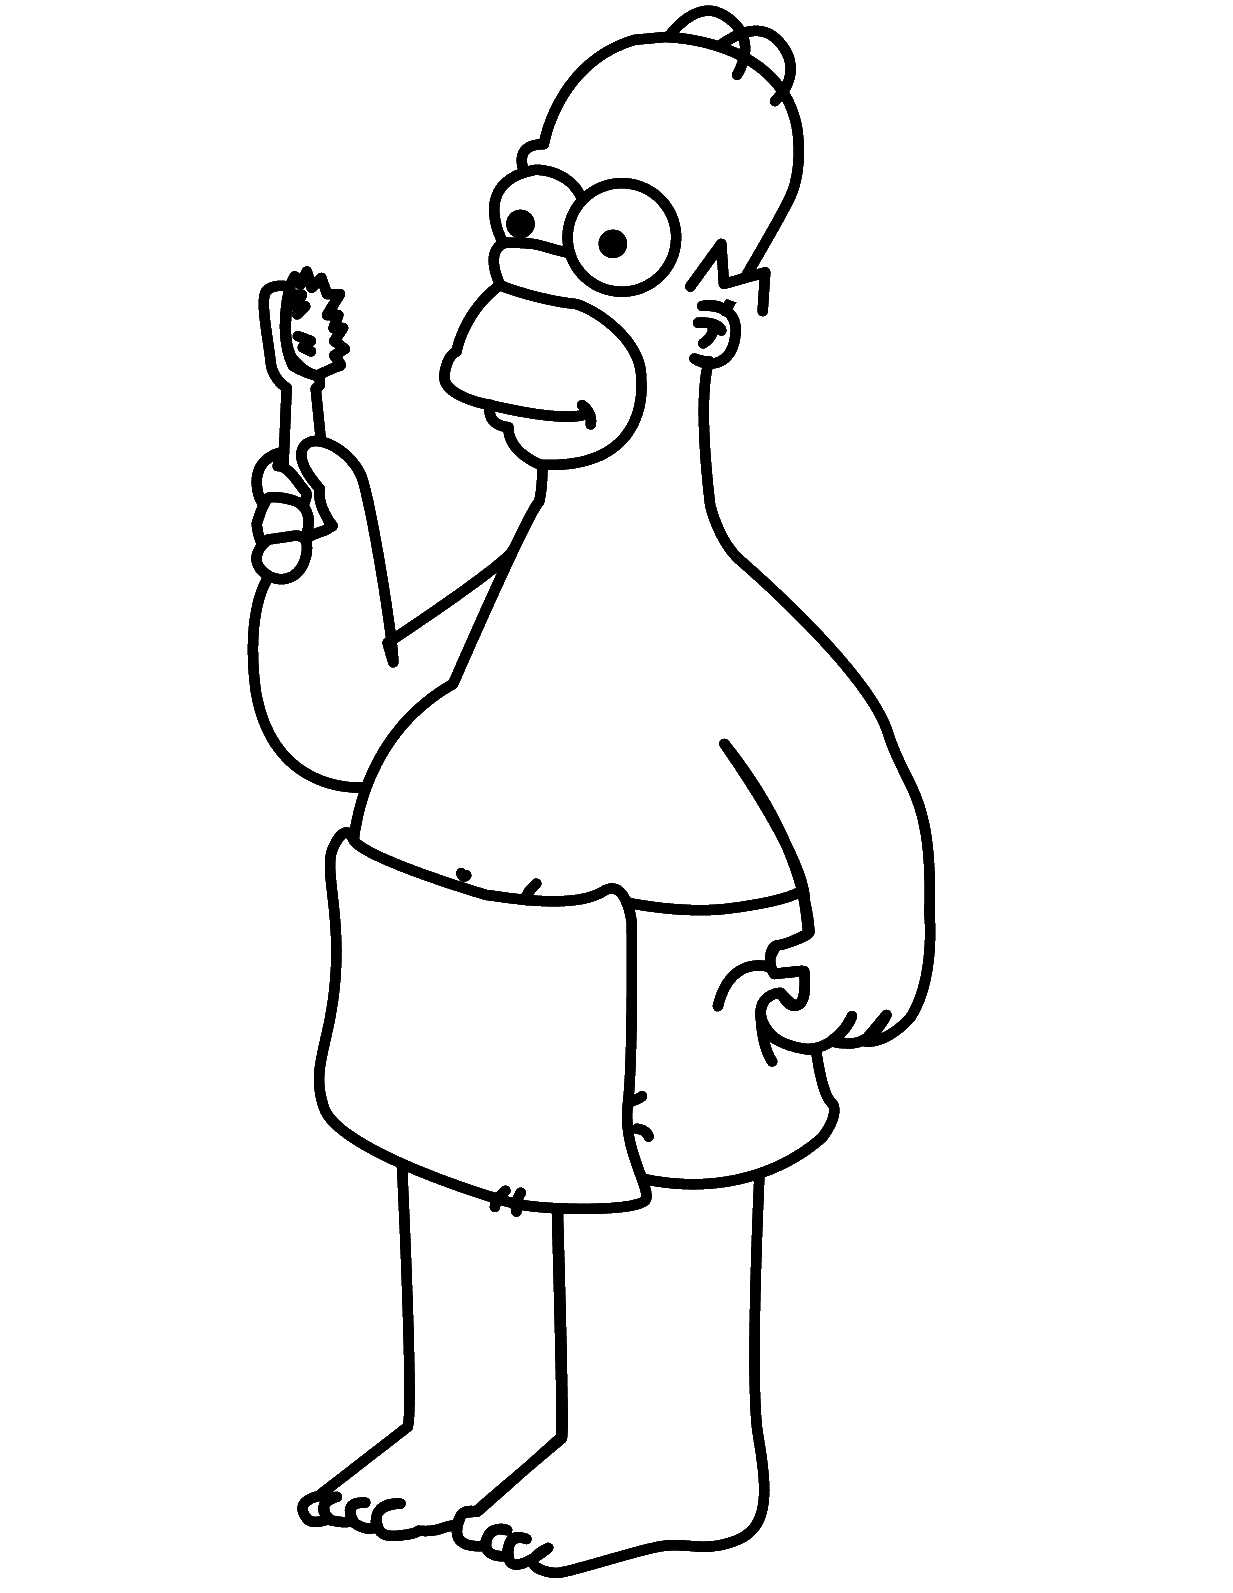 I Simpson - Homer si prepara per il bagno